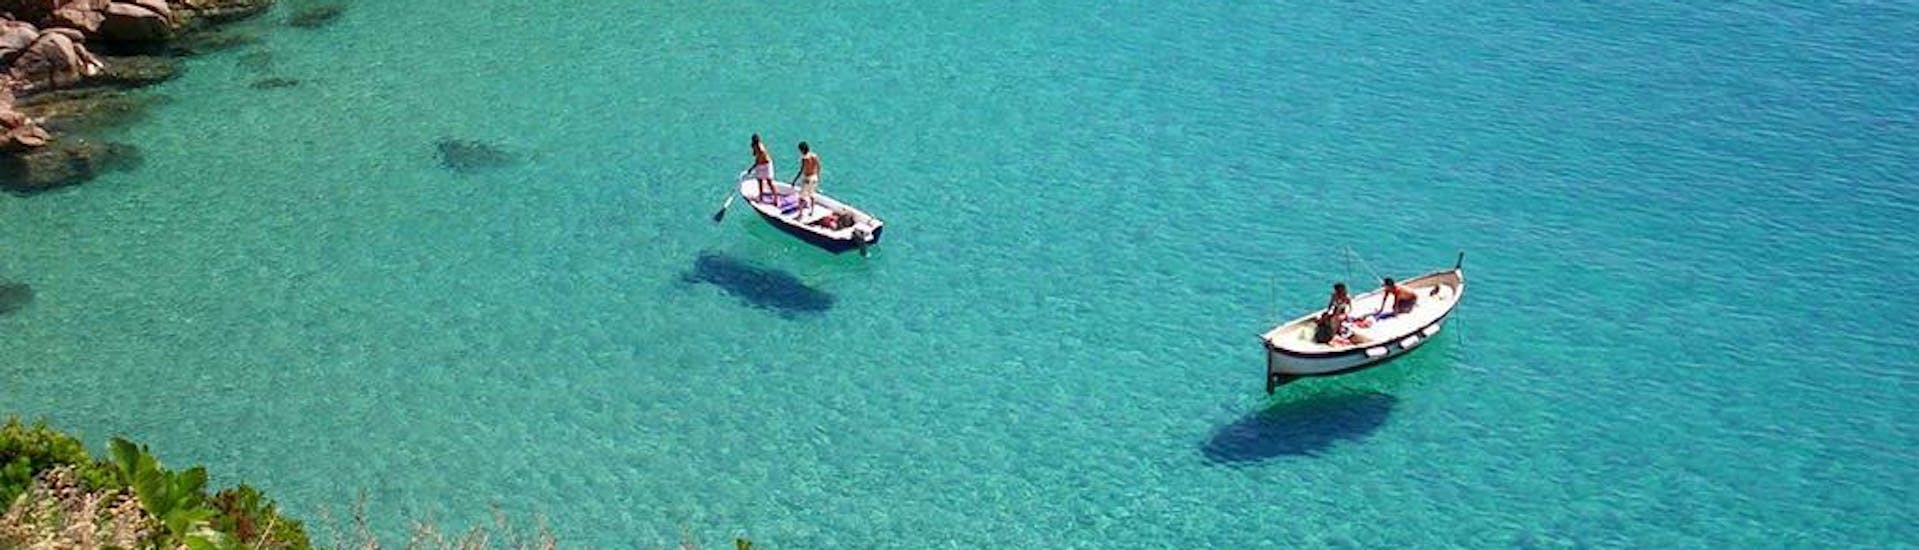 Gita privata in barca all'Isola del Giglio con pranzo e snorkeling.